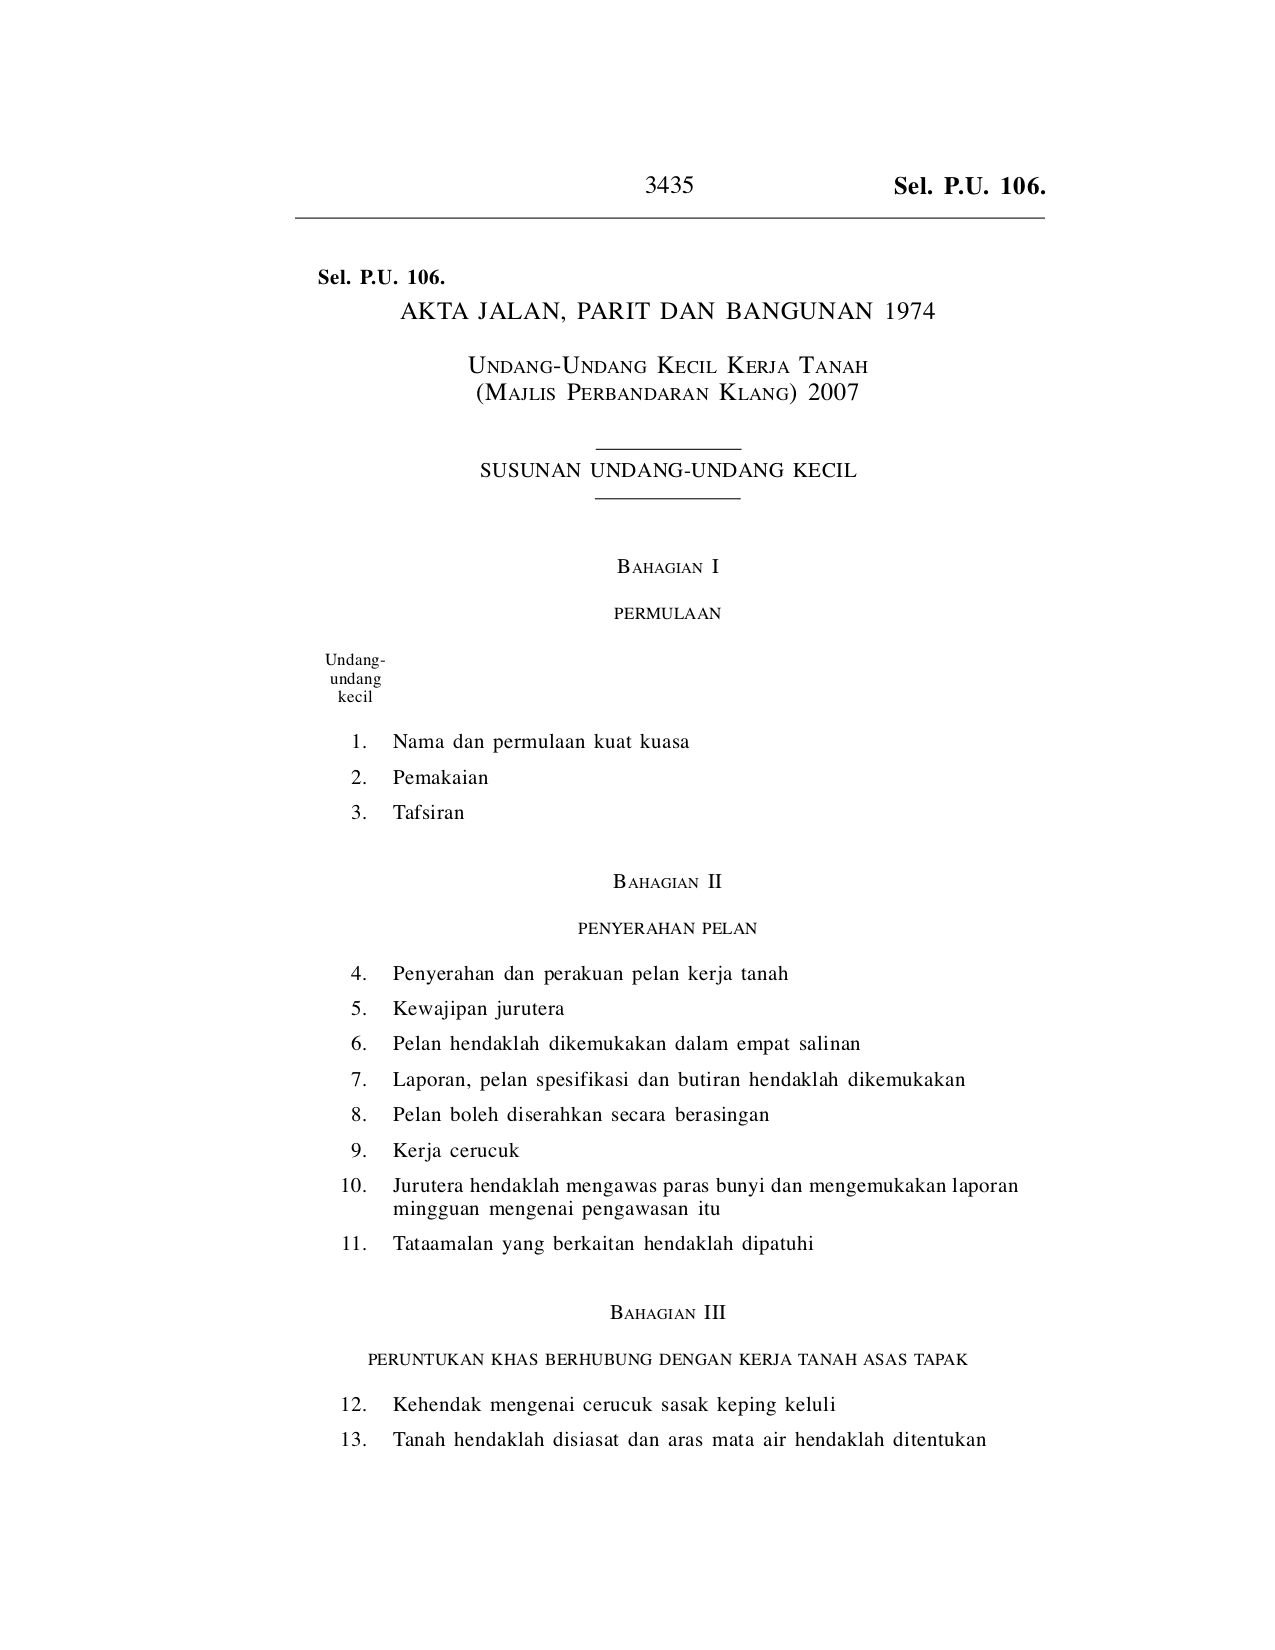 Undang-Undang Kecil Kerja Tanah (Majlis Perbandaran Klang) 2007 - Akta Jalan, Parit Dan Bangunan 1974